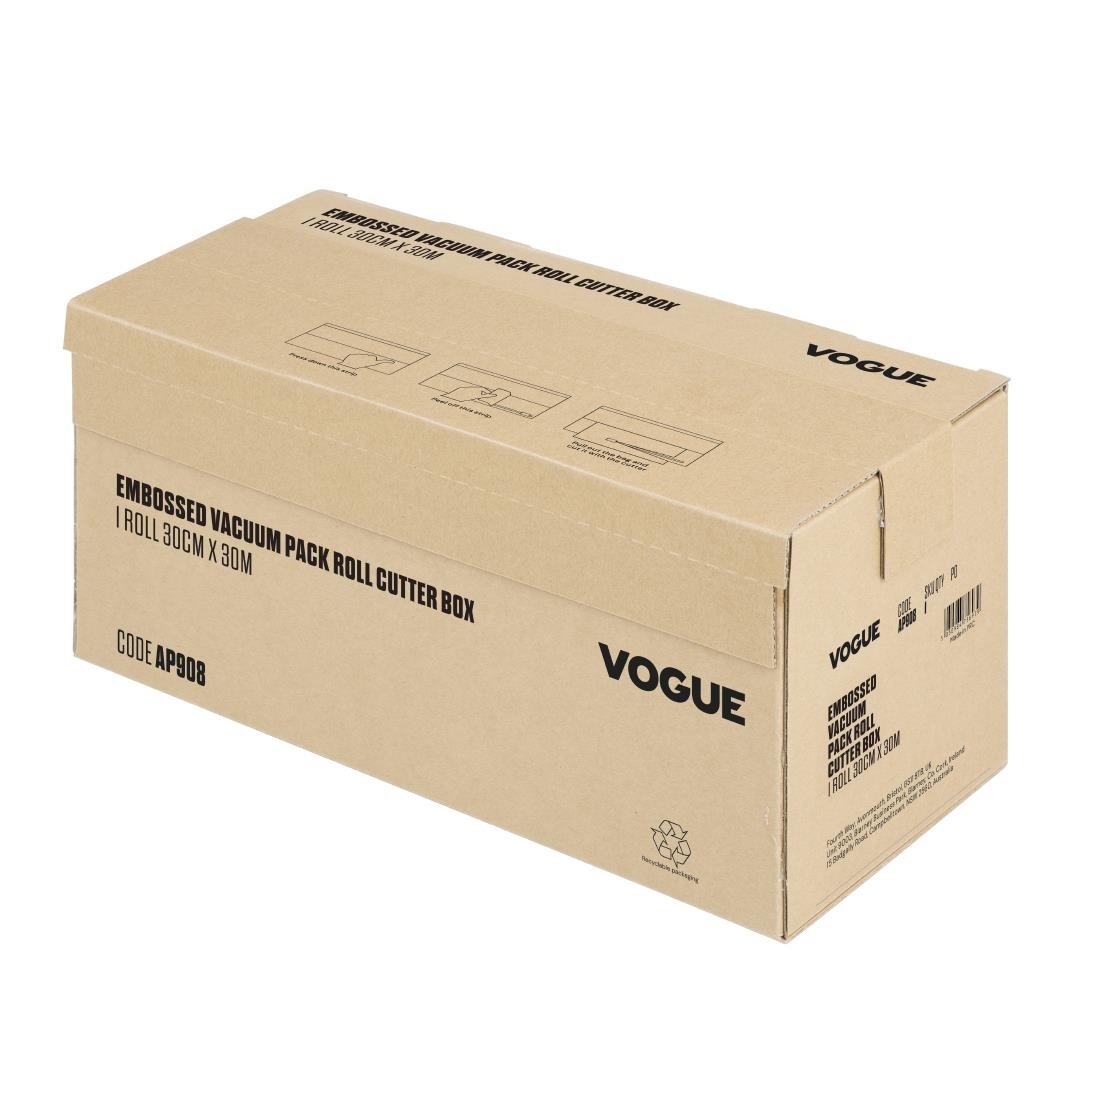 Vogue Vakuumierbeutel Rolle mit Schneidefunktion, 300 mm breit, Kartonbox